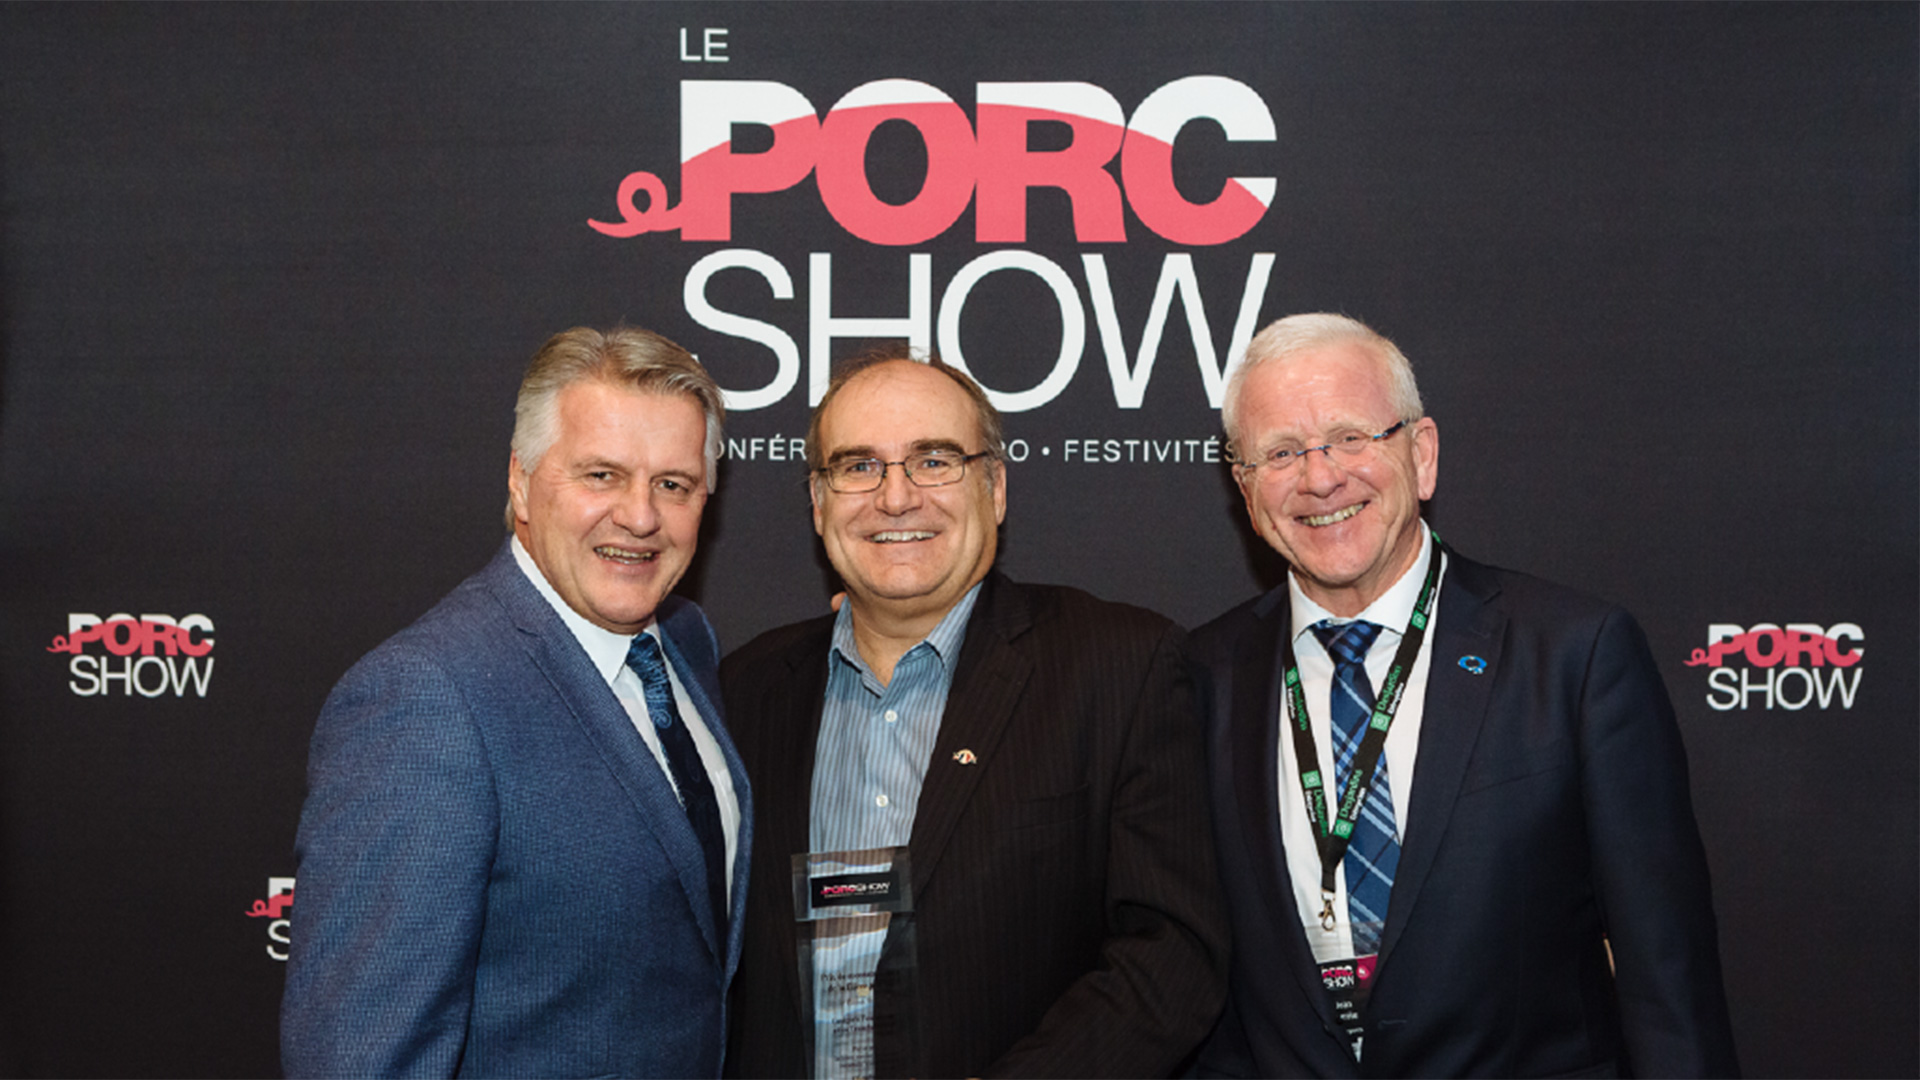 Le porc show 2017